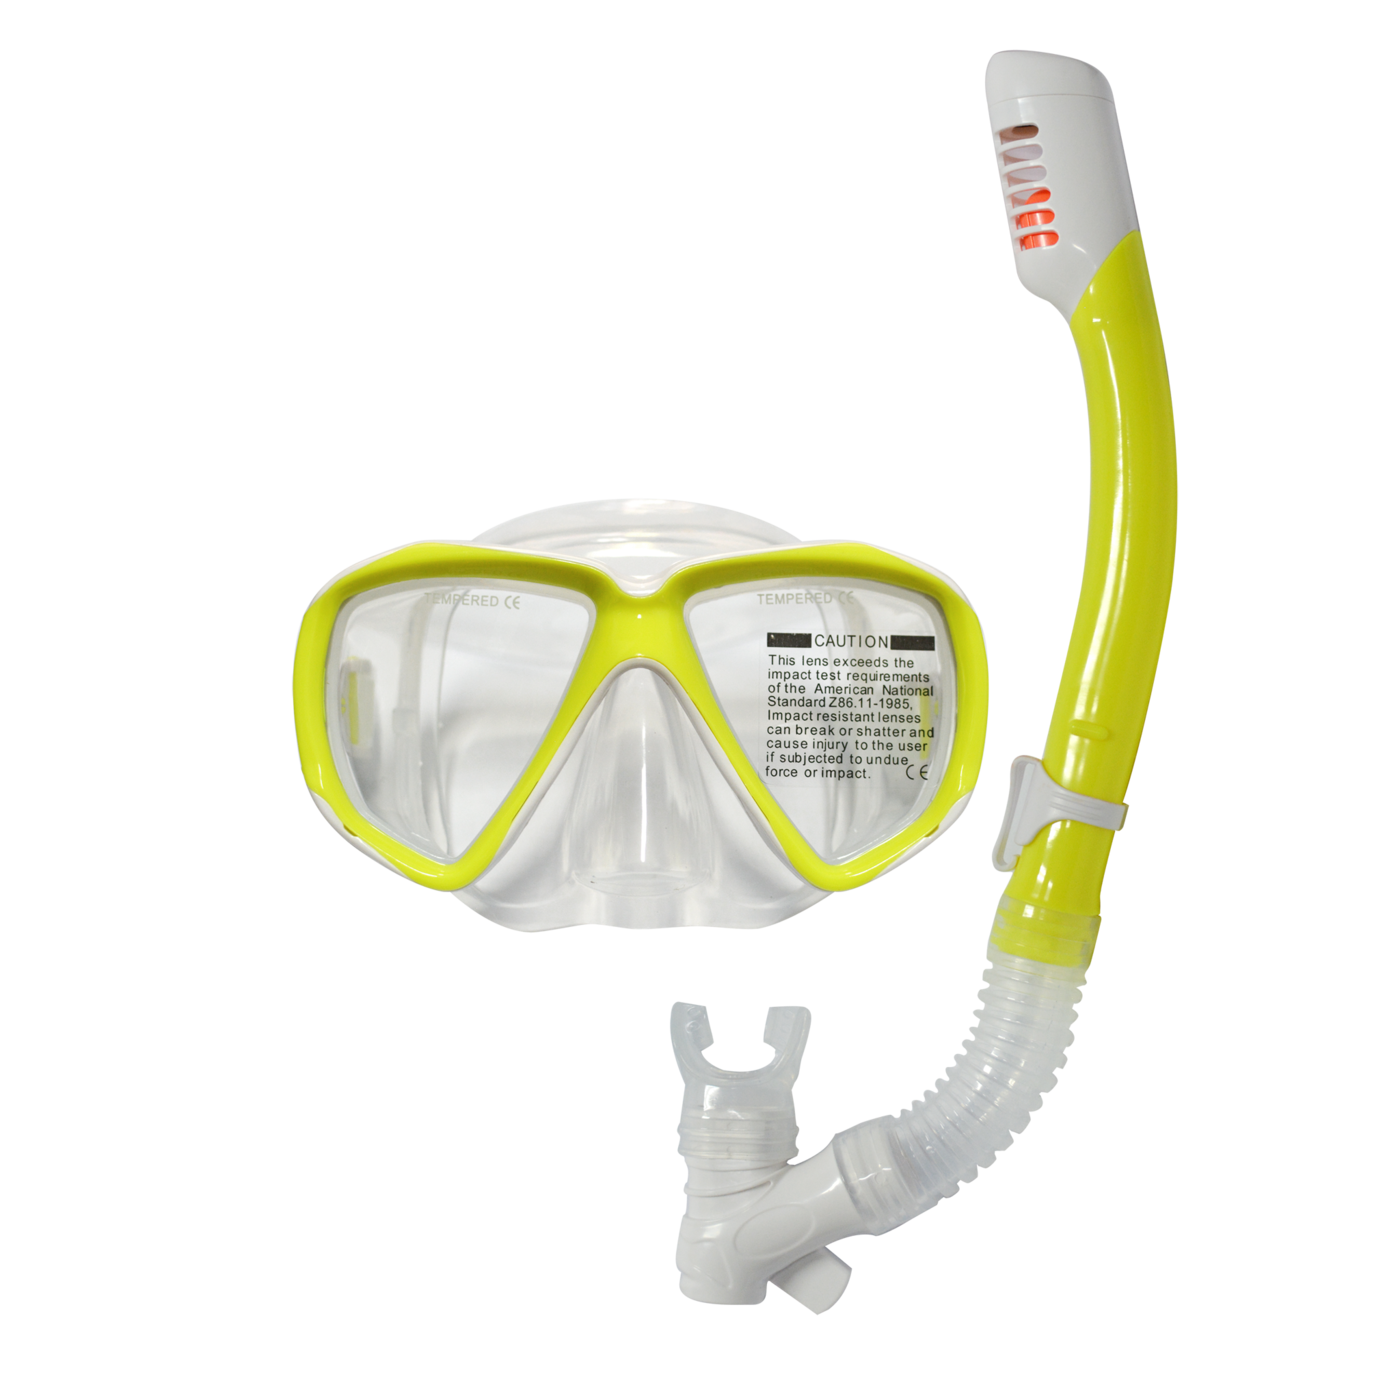 呼吸管、潜水面罩